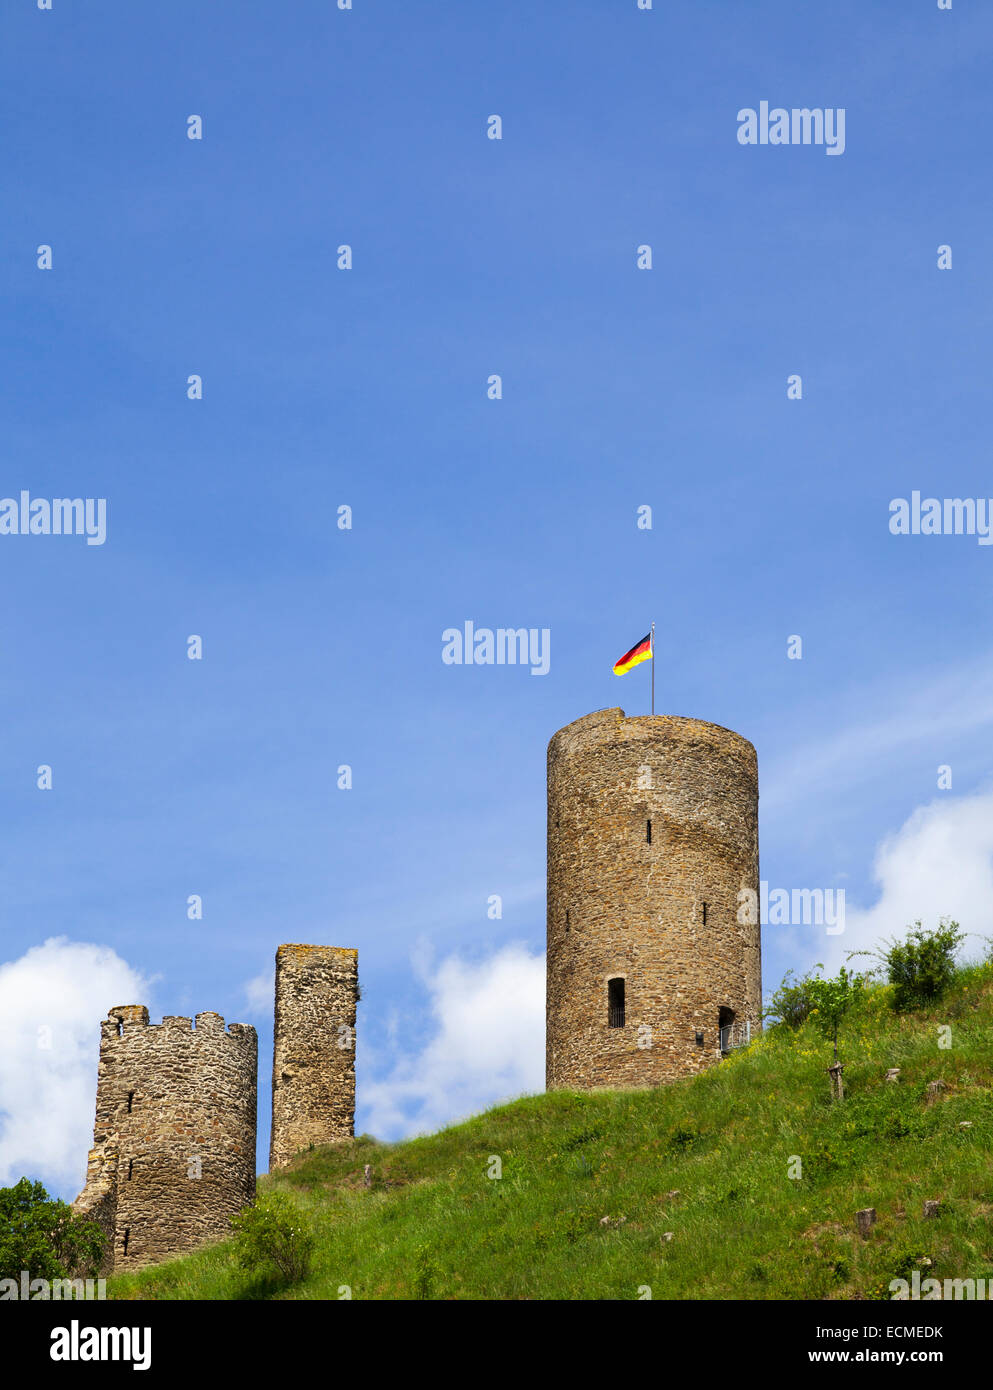 Ruines du château de Löwenburg, Monreal, Rhénanie-Palatinat, Allemagne Banque D'Images